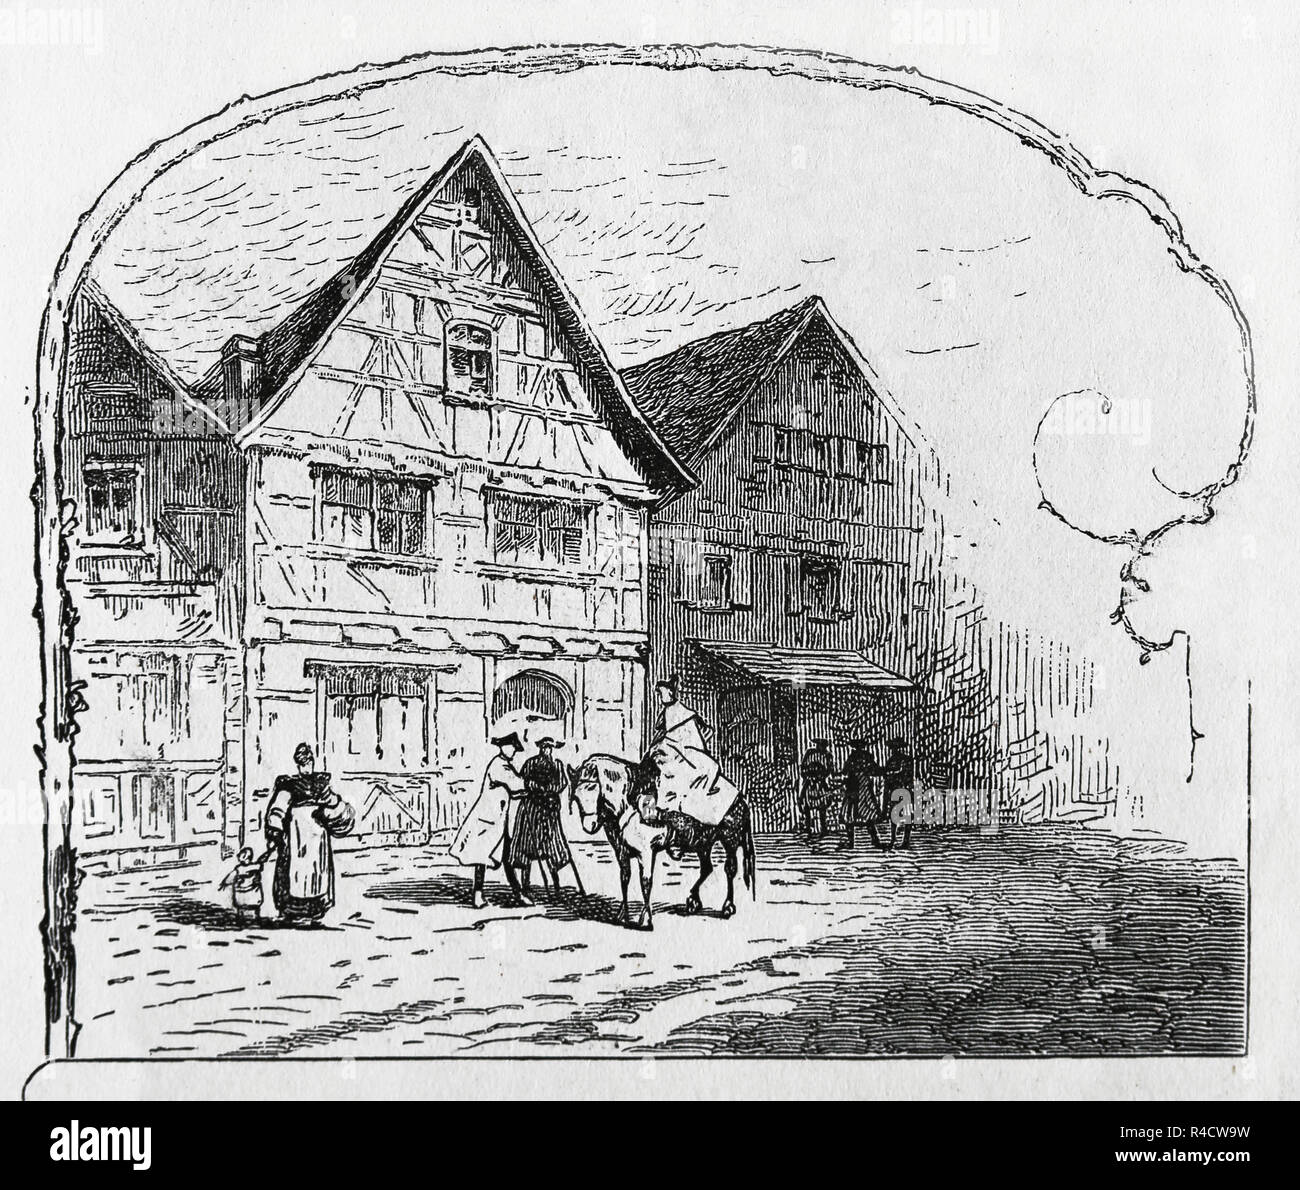 Friedrich Schiller (1759-1805). Deutsche Schriftsteller. Mitglied der Weimarer Klassik. Geburtsort in Marbach, Deutschland. Engravin der Germania, 1882. Stockfoto